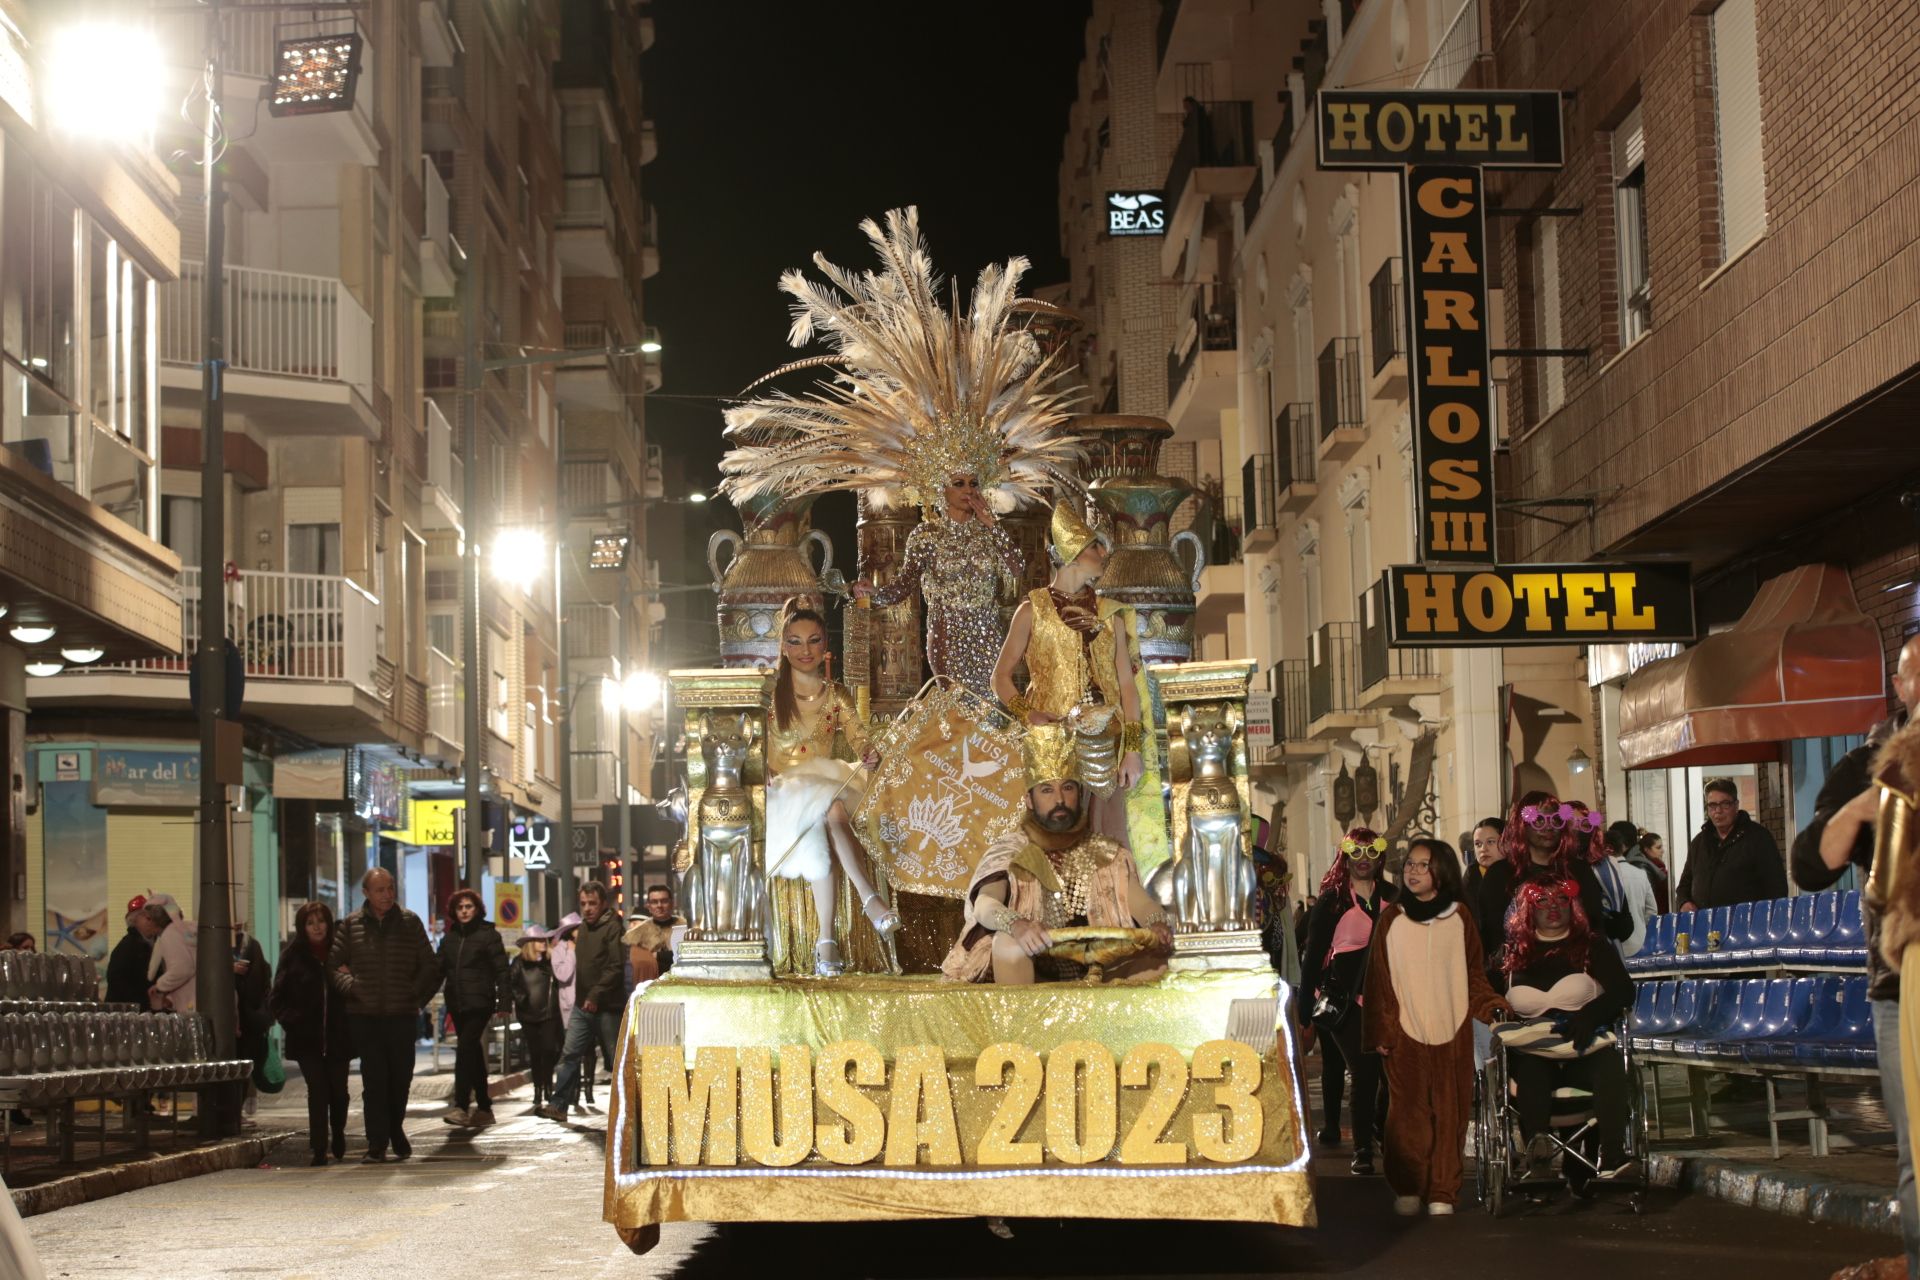 Batalla de Don Carnal y Doña Cuaresma y Pregón del Carnaval de Lorca 2023